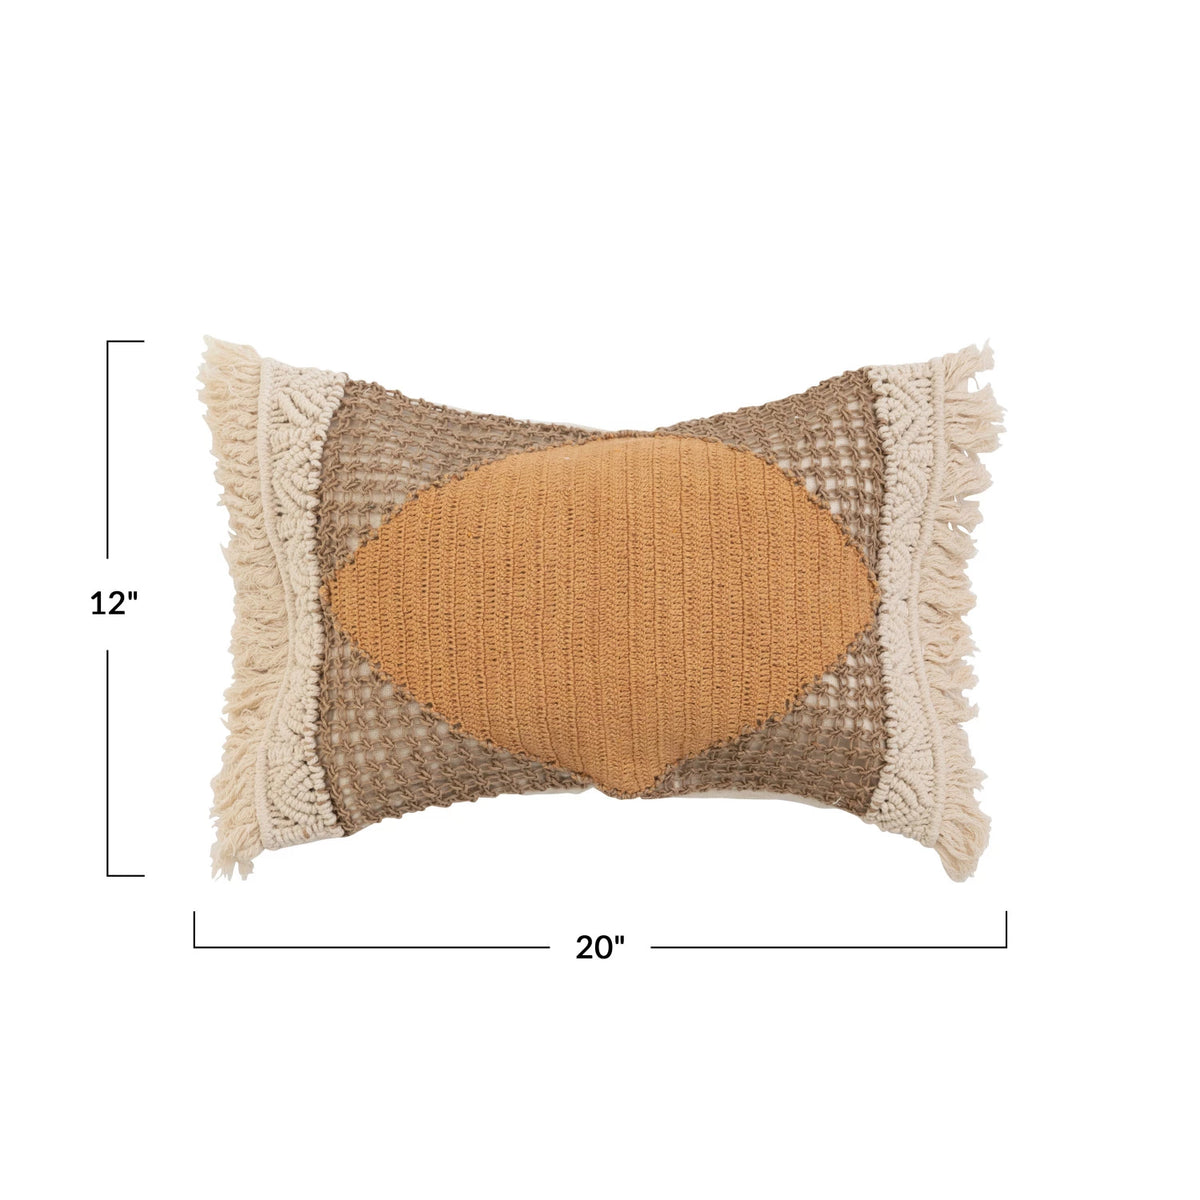 Hand Woven Cotton & Jute Lumbar Pillow w/ Macramé, Crochet & Fringe